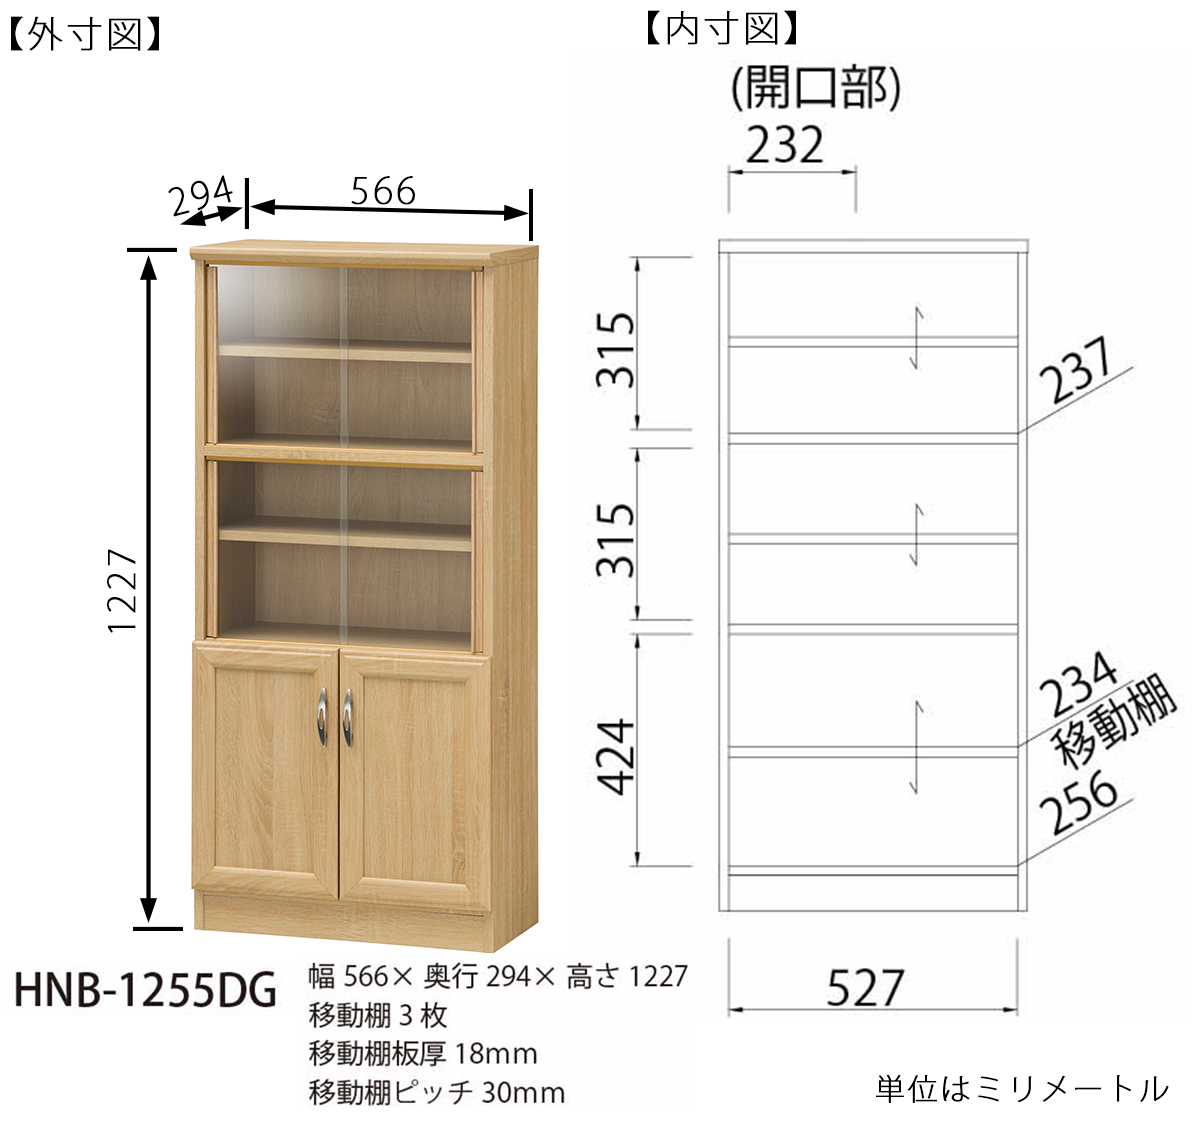 ミニ食器棚 カップボード ホノボーラ HNB-1255DG キッチン収納白井産業 